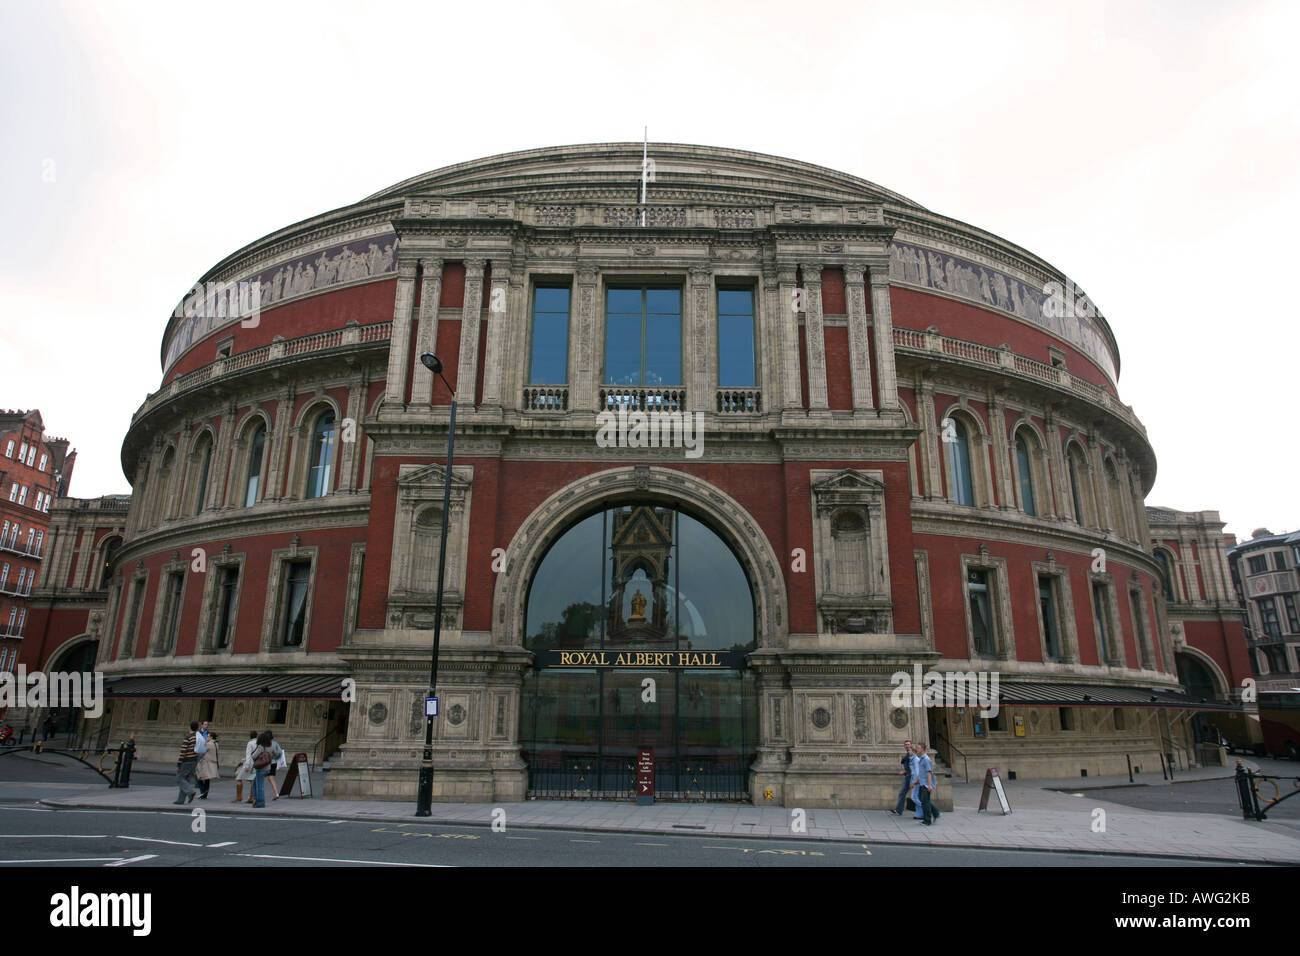 La mundialmente famosa atracción turística emblemático edificio victoriano, el Royal Albert Hall de Londres Kensington Inglaterra Gran Bretaña UK EU Foto de stock